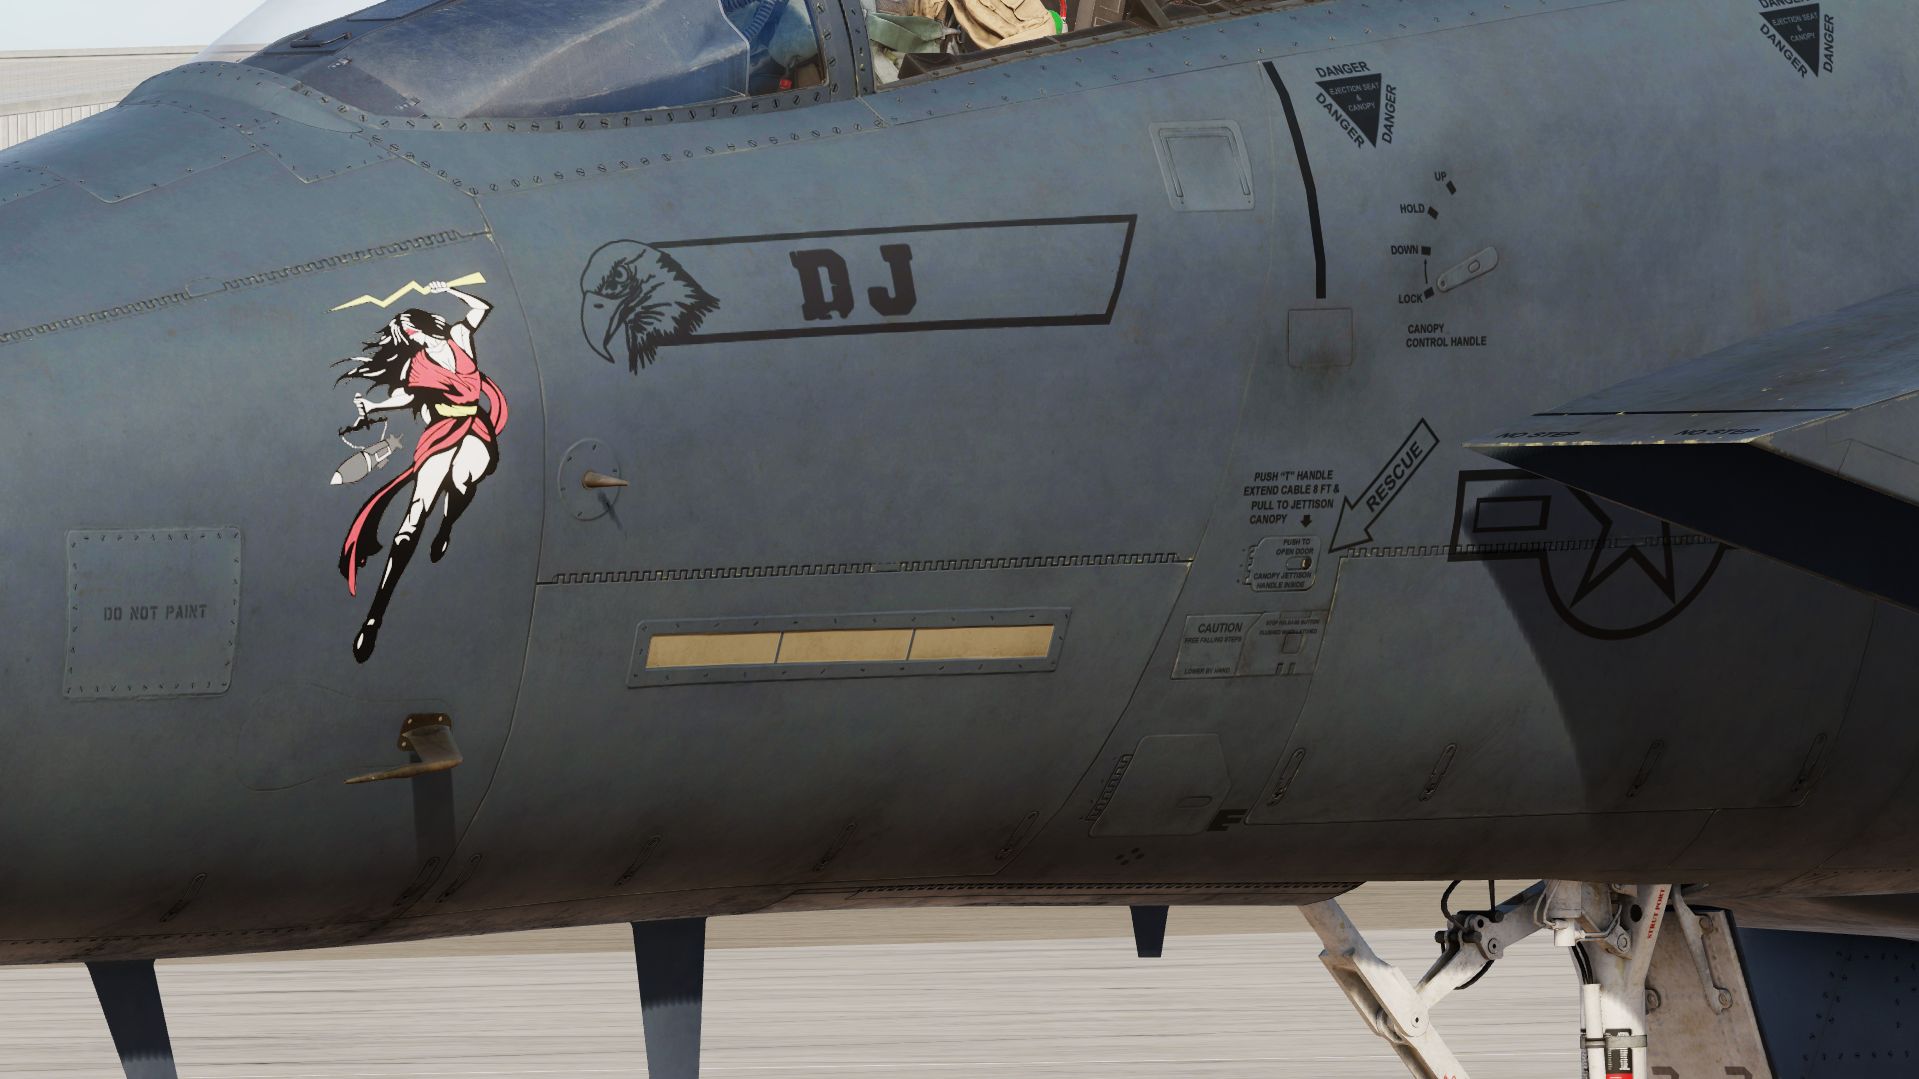 F-15E Strike eagle MO 87-210 "DJ"